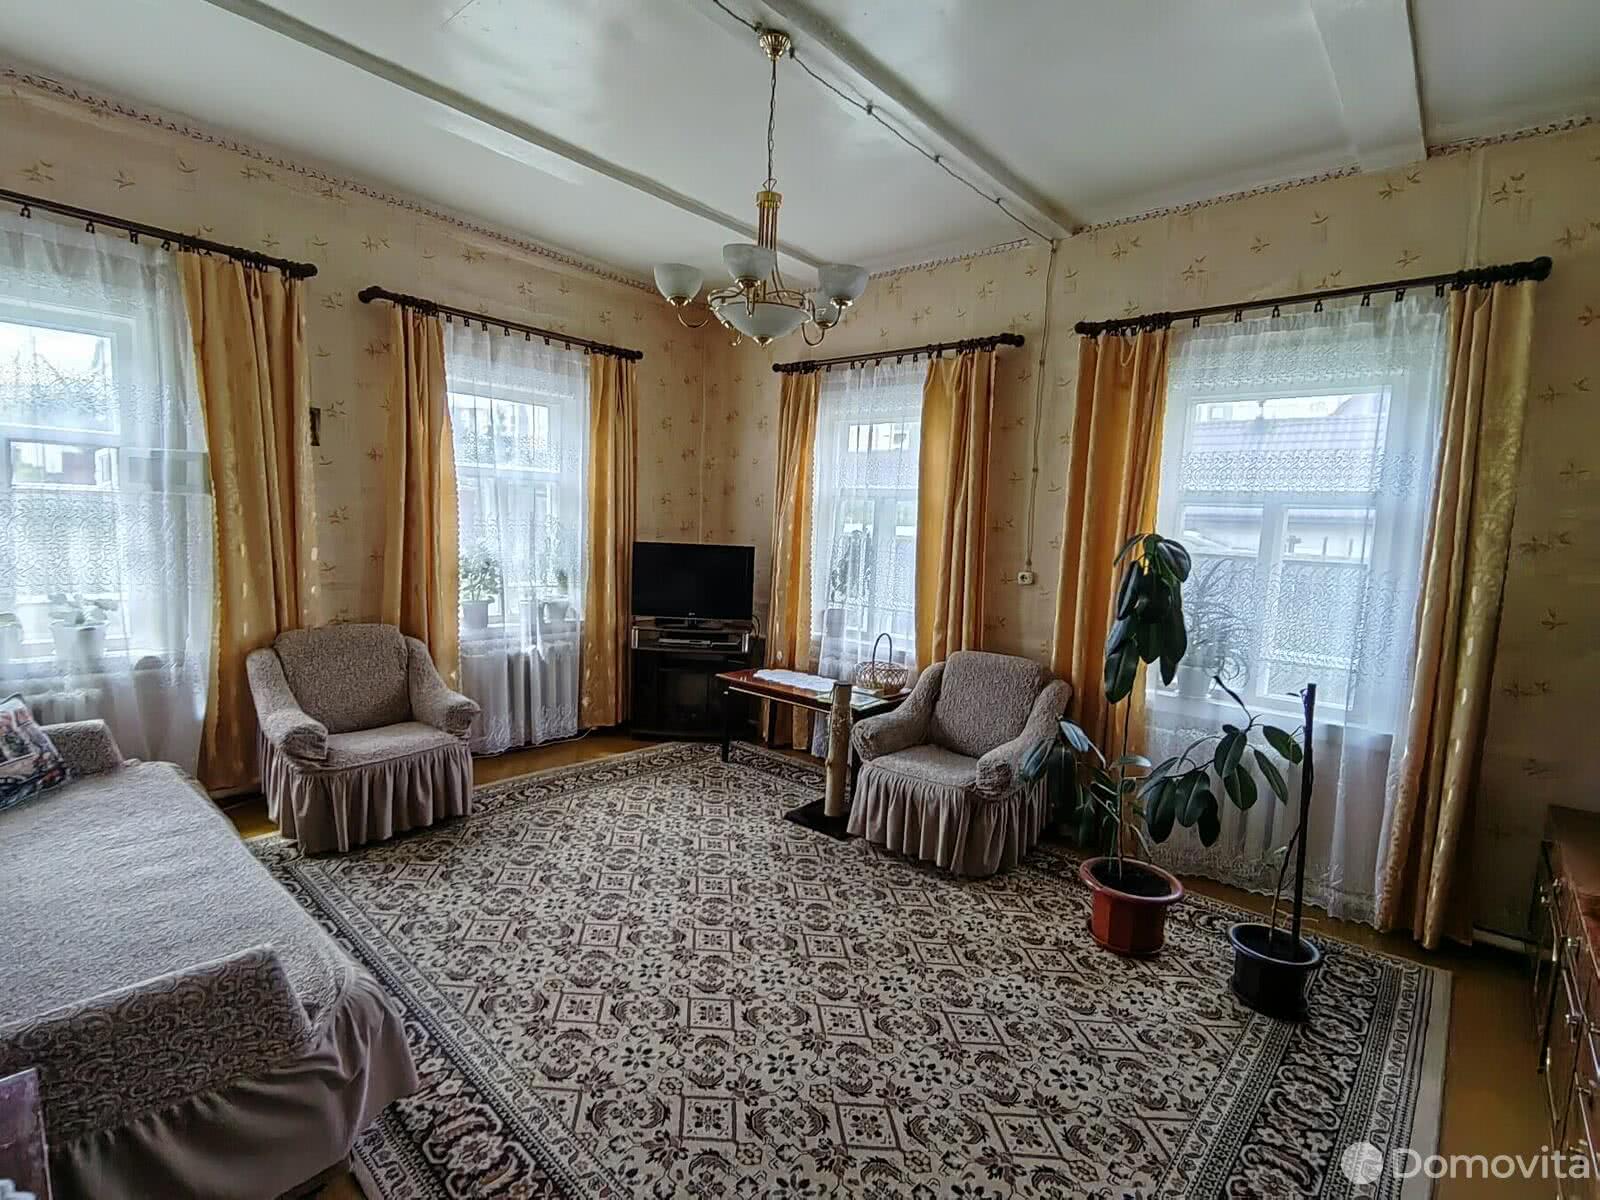 Продать 1-этажный дом в Борисове, Минская область пер. Связной, 37800USD, код 638029 - фото 1